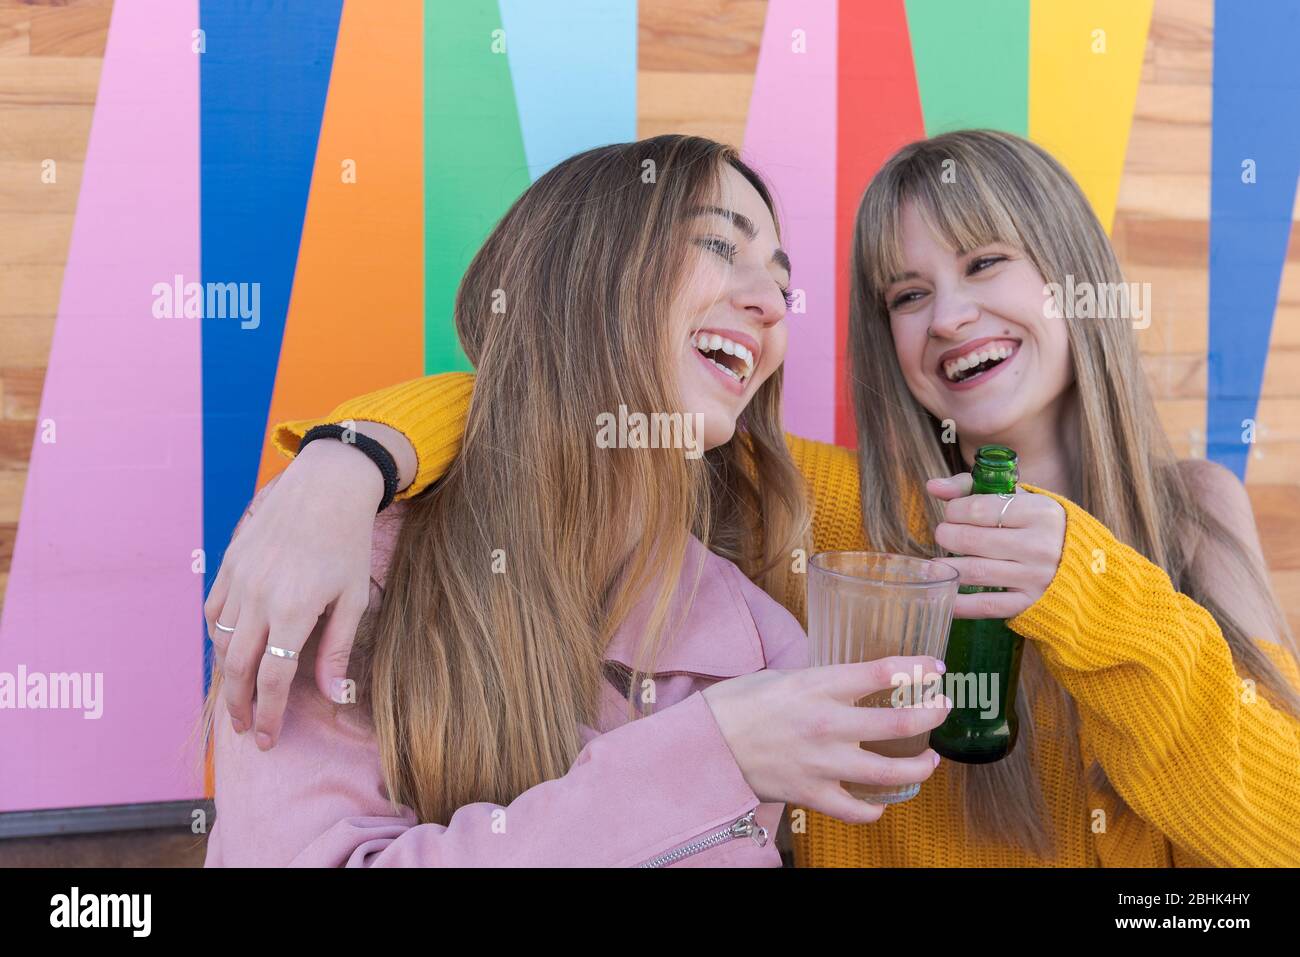 Zwei fröhliche junge kaukasische Frauen stoßen mit einem Drink an die bunte Wand einer Stadtbar Stockfoto